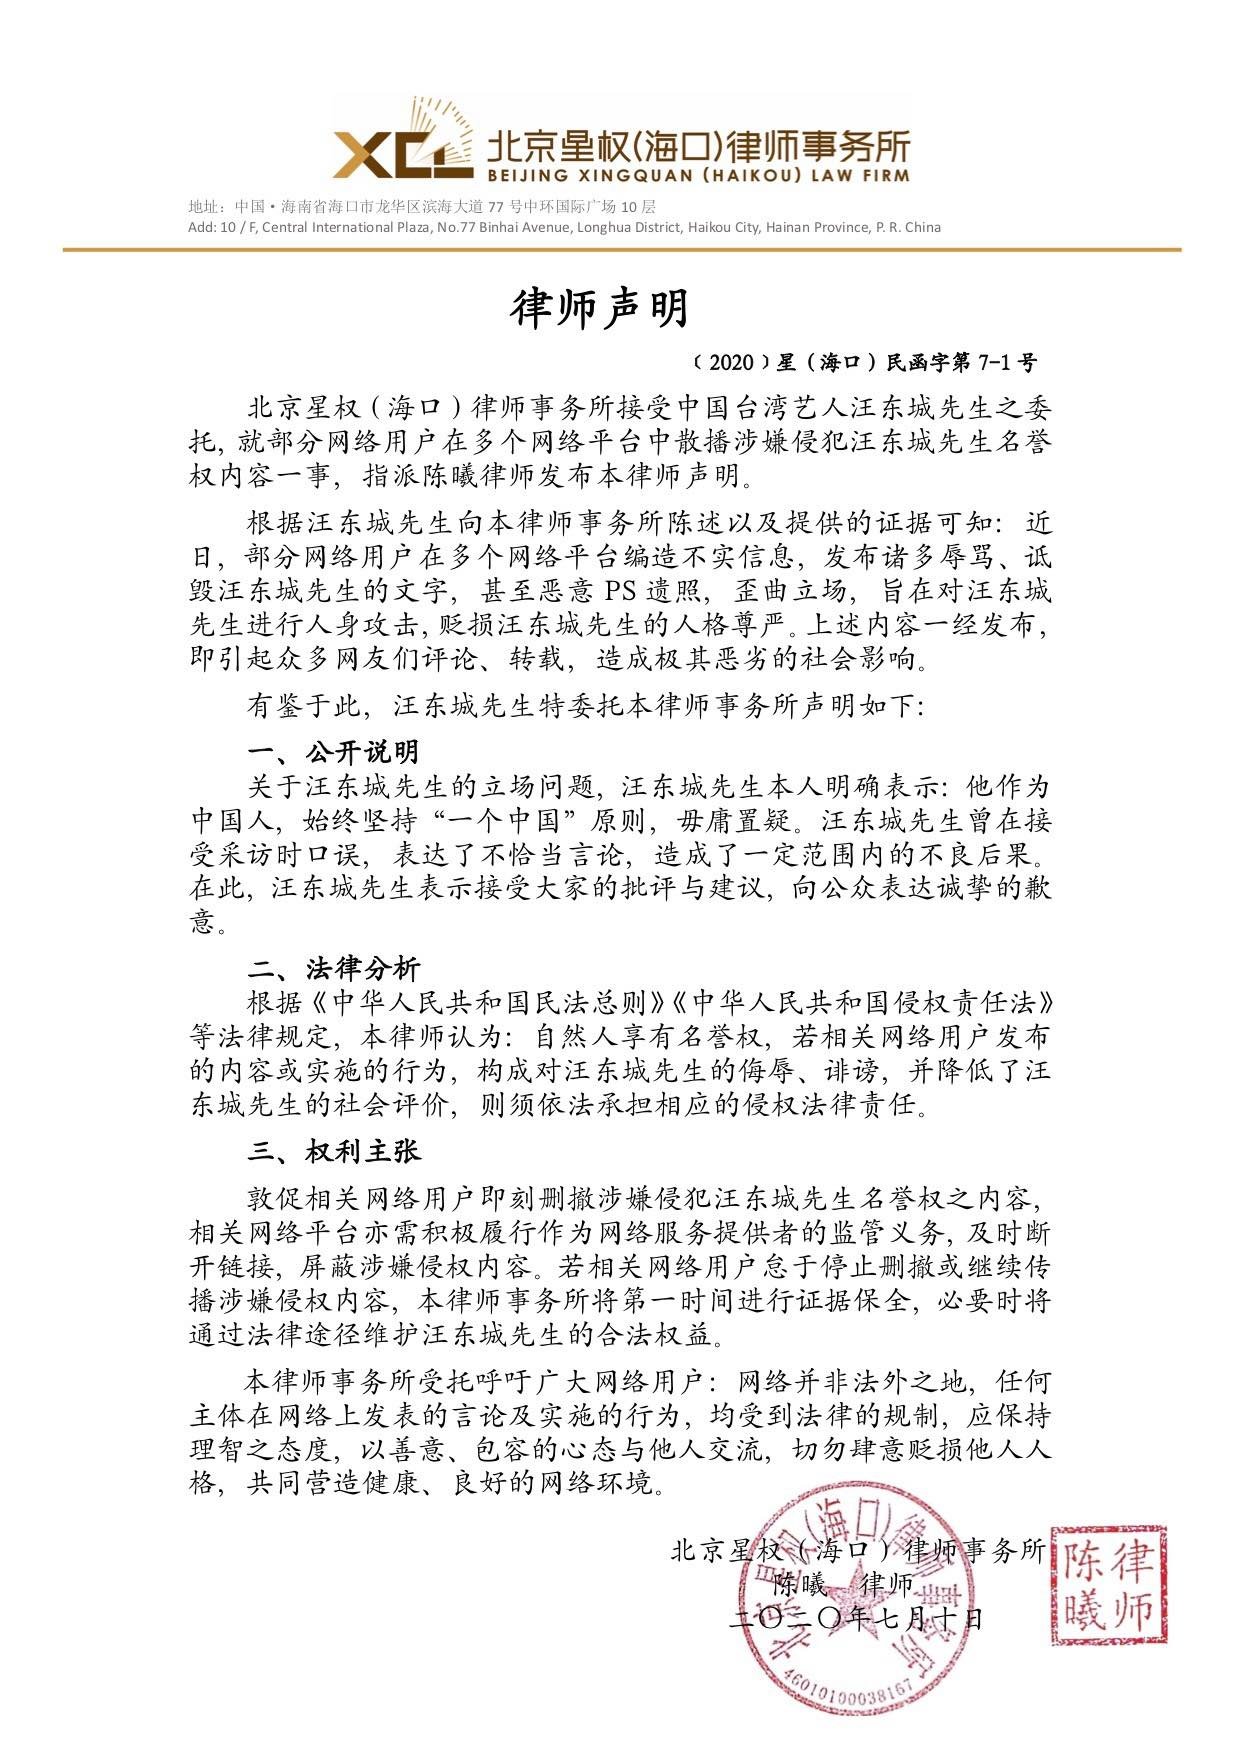 汪东城通过律师声明再次强调自己的政治立场，也警告恶意攻击他的网民。